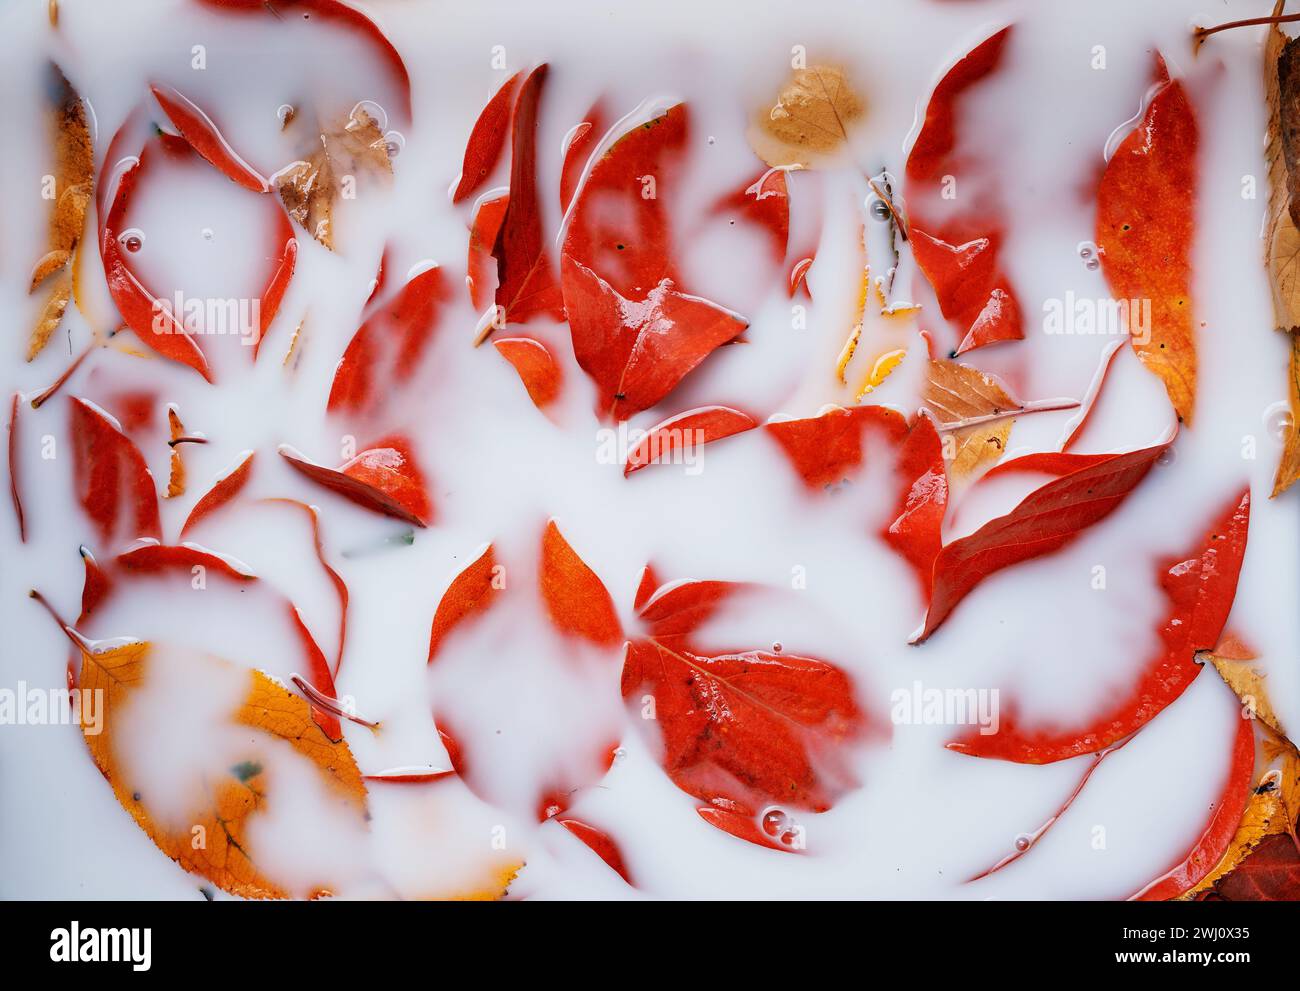 El líquido blanco cubre casi por completo las hojas rojas que yacen en él Foto de stock